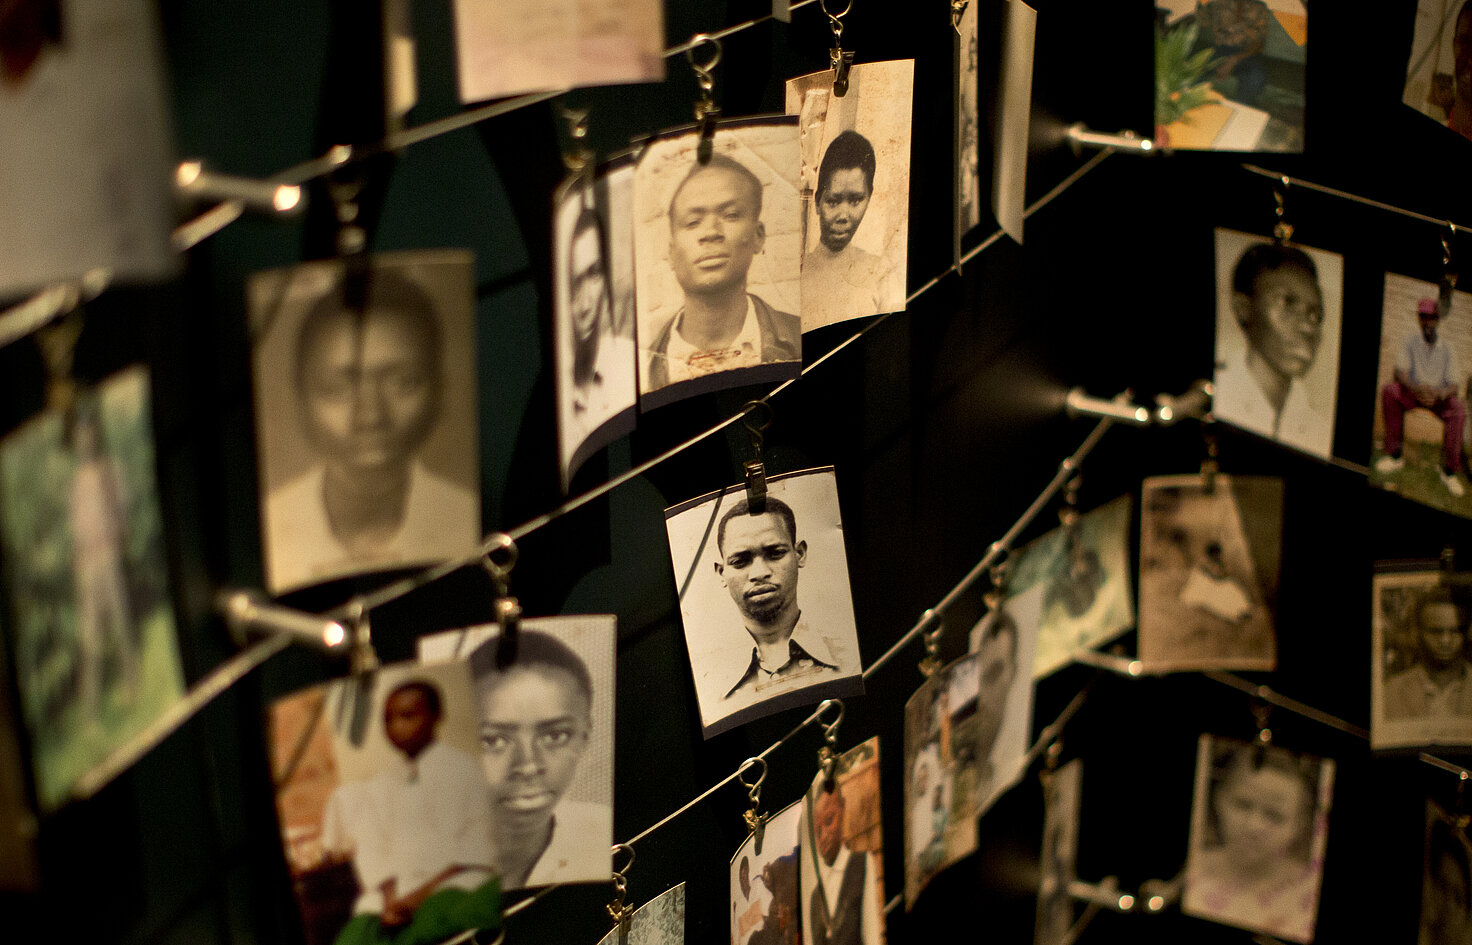 Fotografías de personas fallecidas expuestas en el Centro dedicado a la memoria del genocidio en Kigali, Ruanda. Más de 20 años después, muchos...